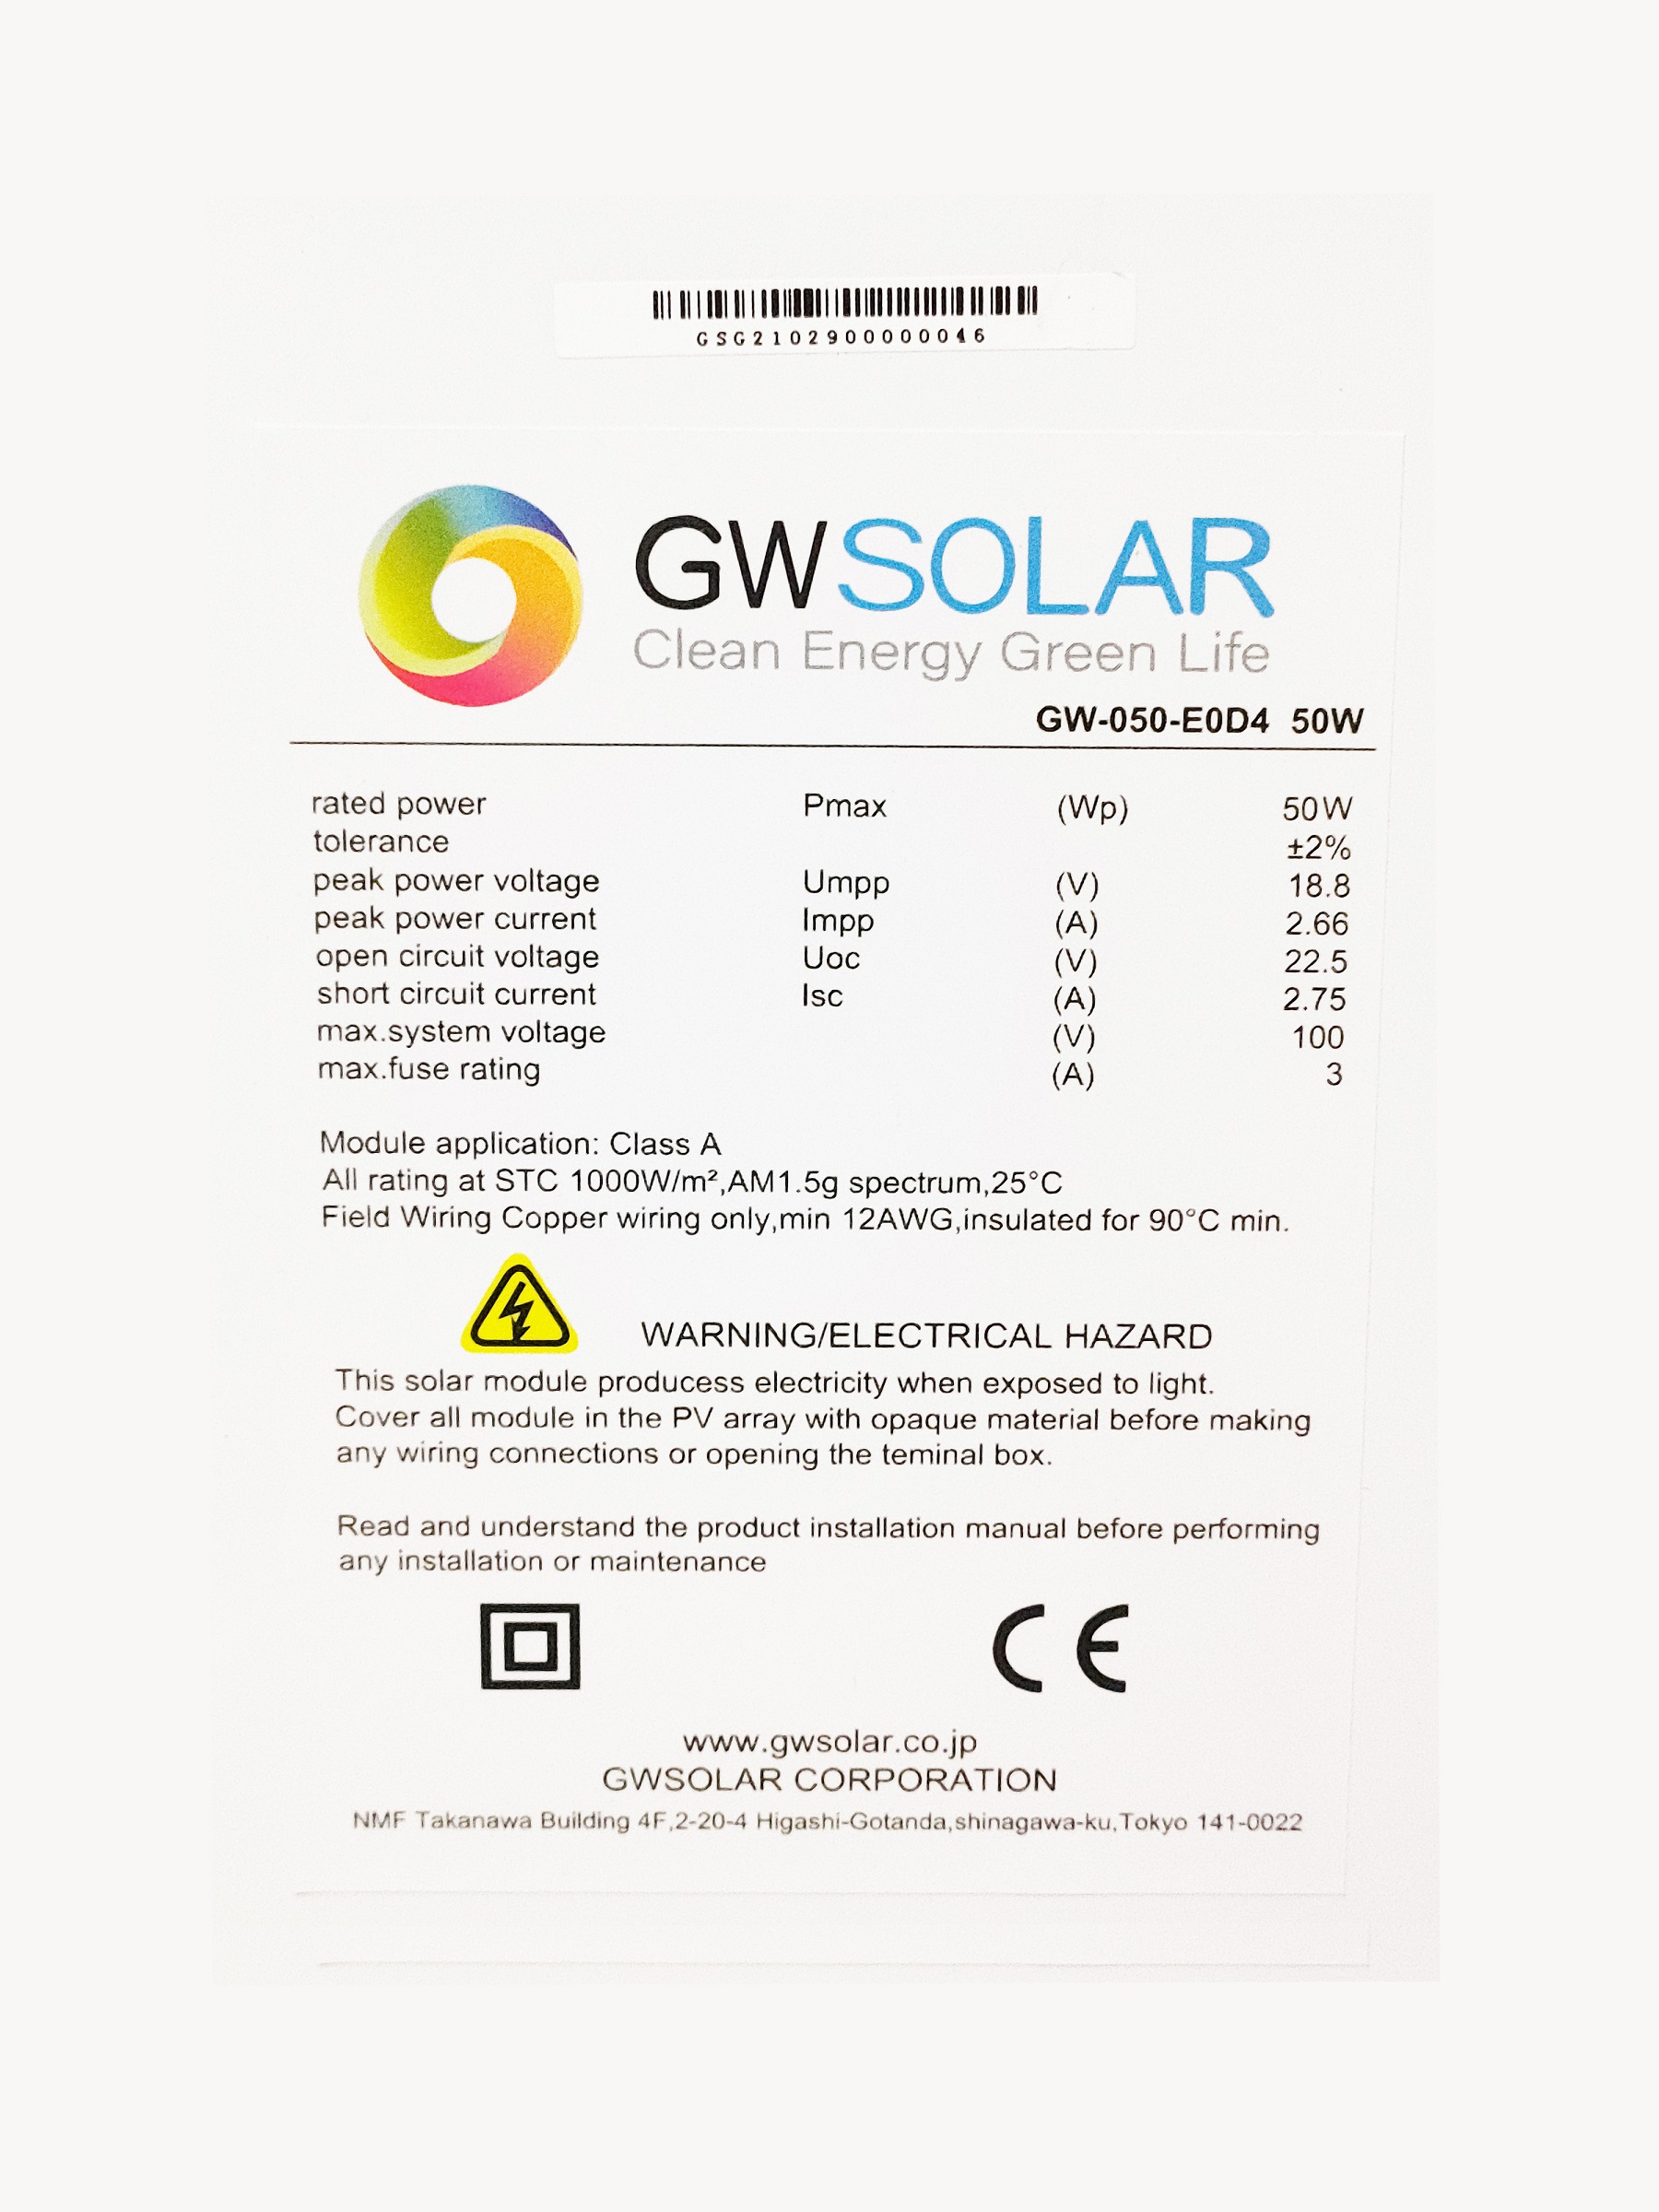 GWSOLAR影に強い! ソーラーパネル50W 全並列 太陽光パネル【12V充電用